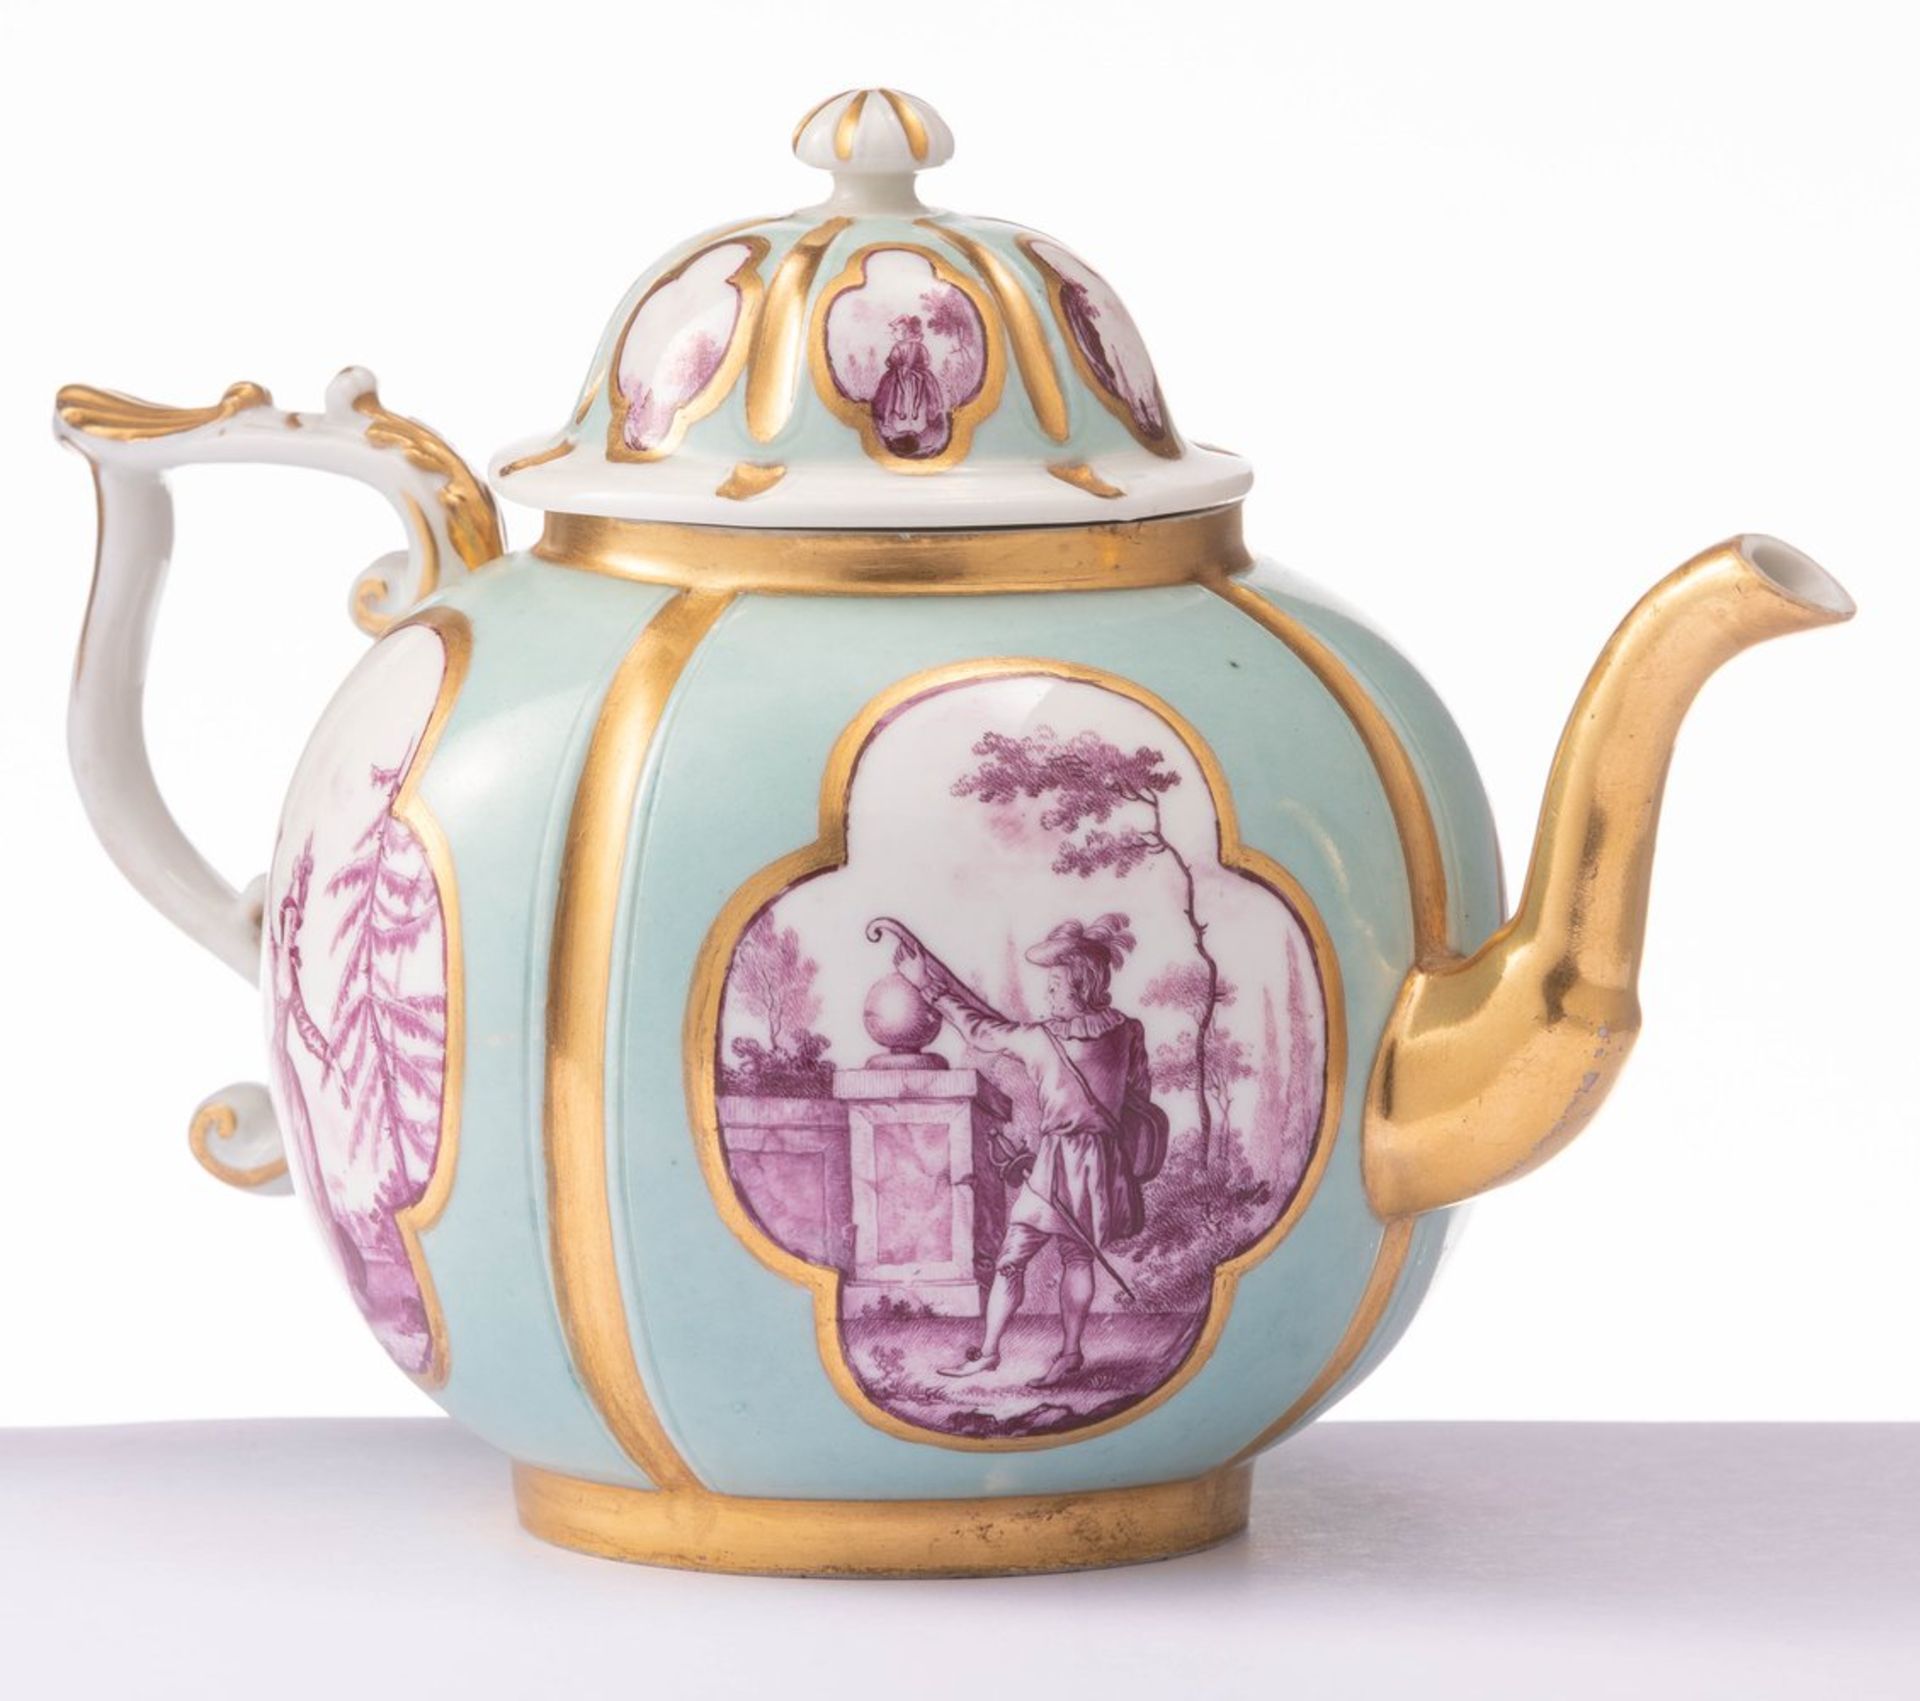 Kleine Teekanne mit Watteaumalerei und KPM-MarkeMeissen, um 1723/24Türkisfarbener Fo - Bild 4 aus 6